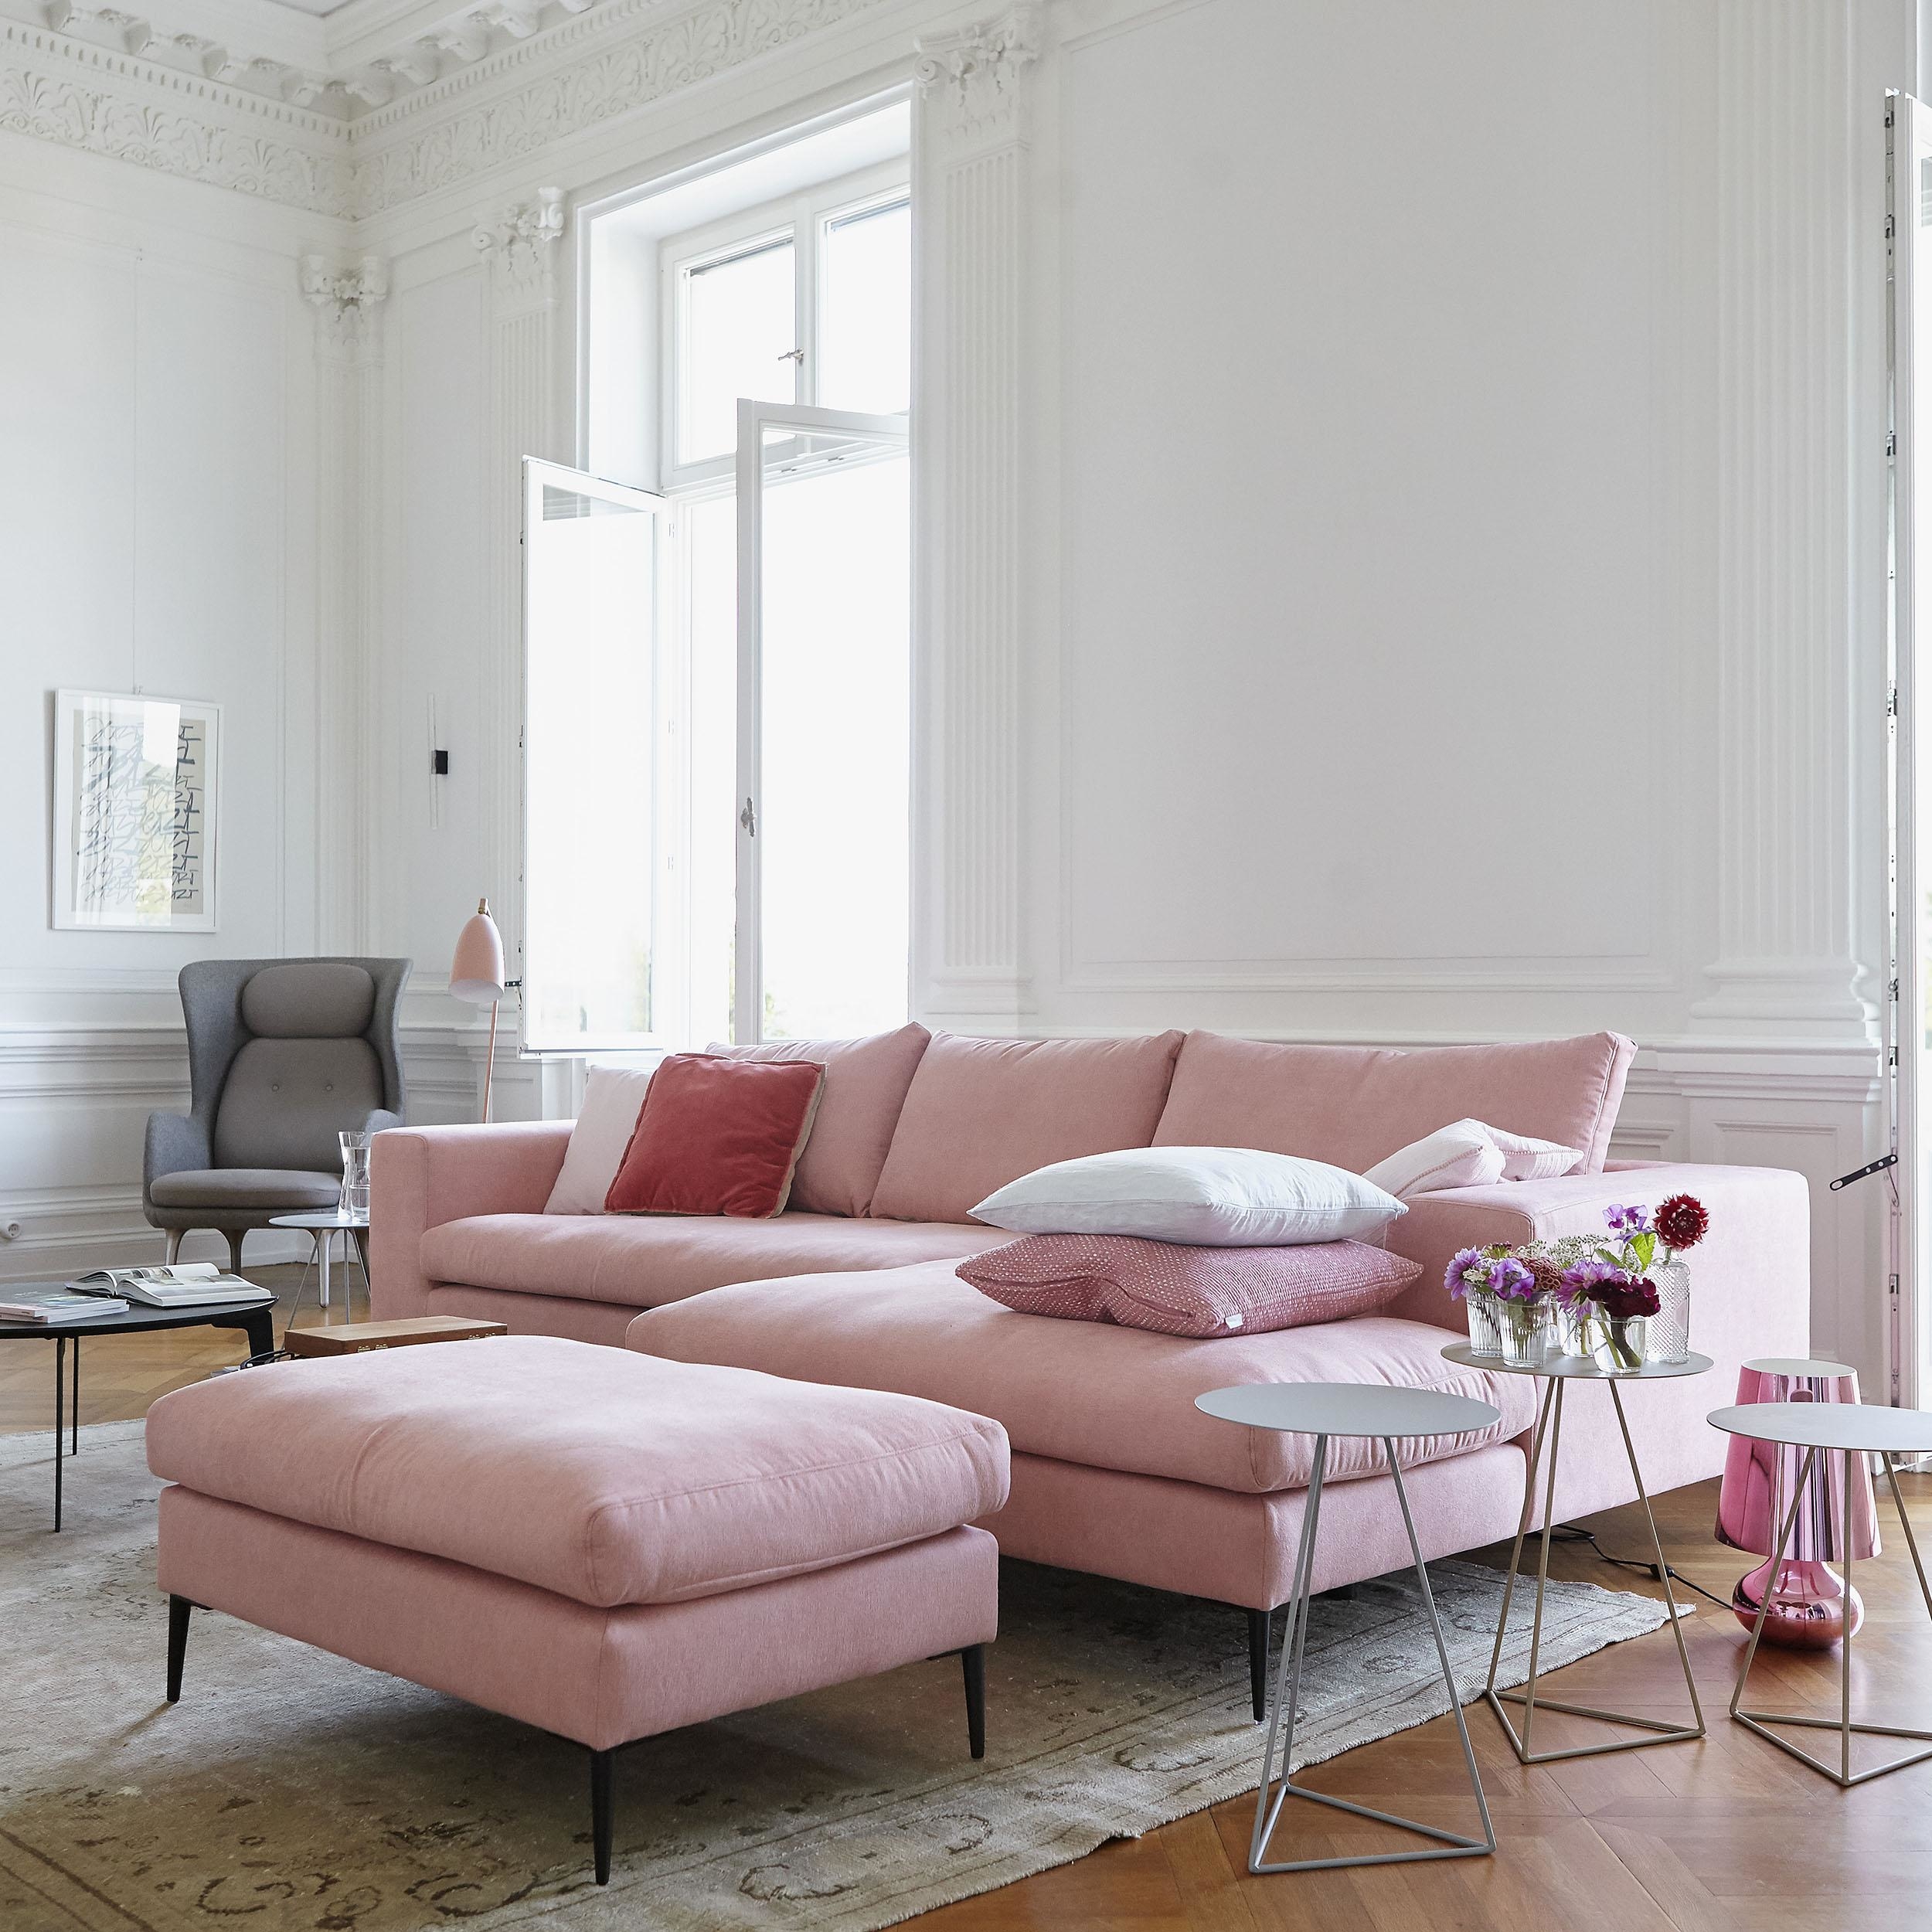 sofas couches millennial bigsofa nurgadiivan curatedinterior millwork salotto ikarus roomido couchstyle gemuetliche sofaecke 868d wohntraum 50b9